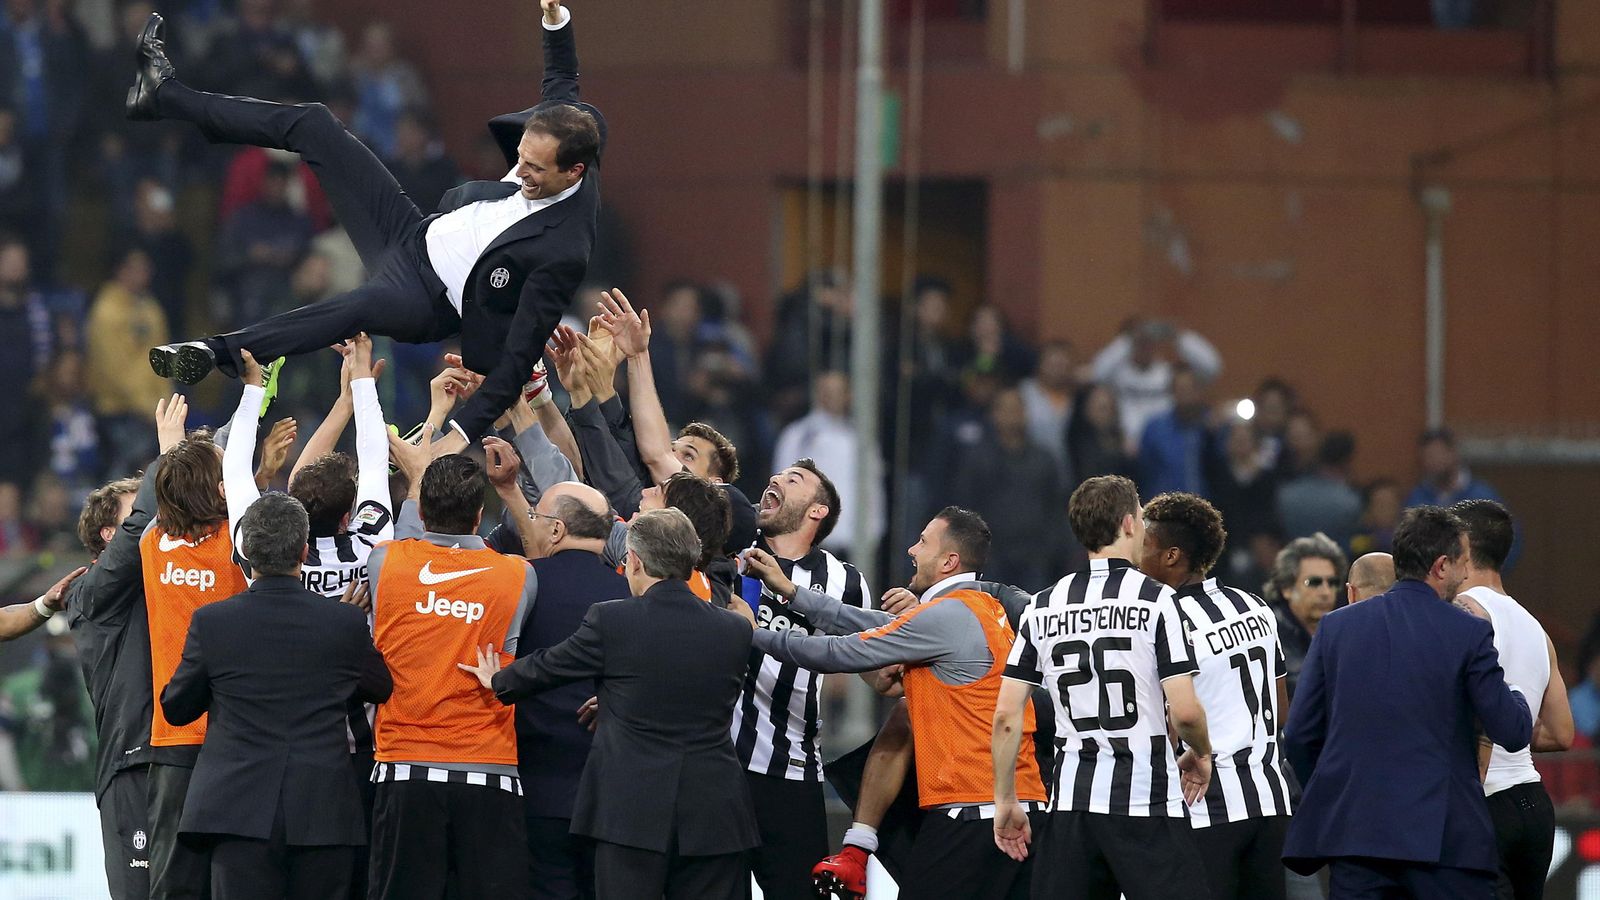 Foto: Allegri es manteado por sus jugadores tras ganar el Scudetto (Reuters).